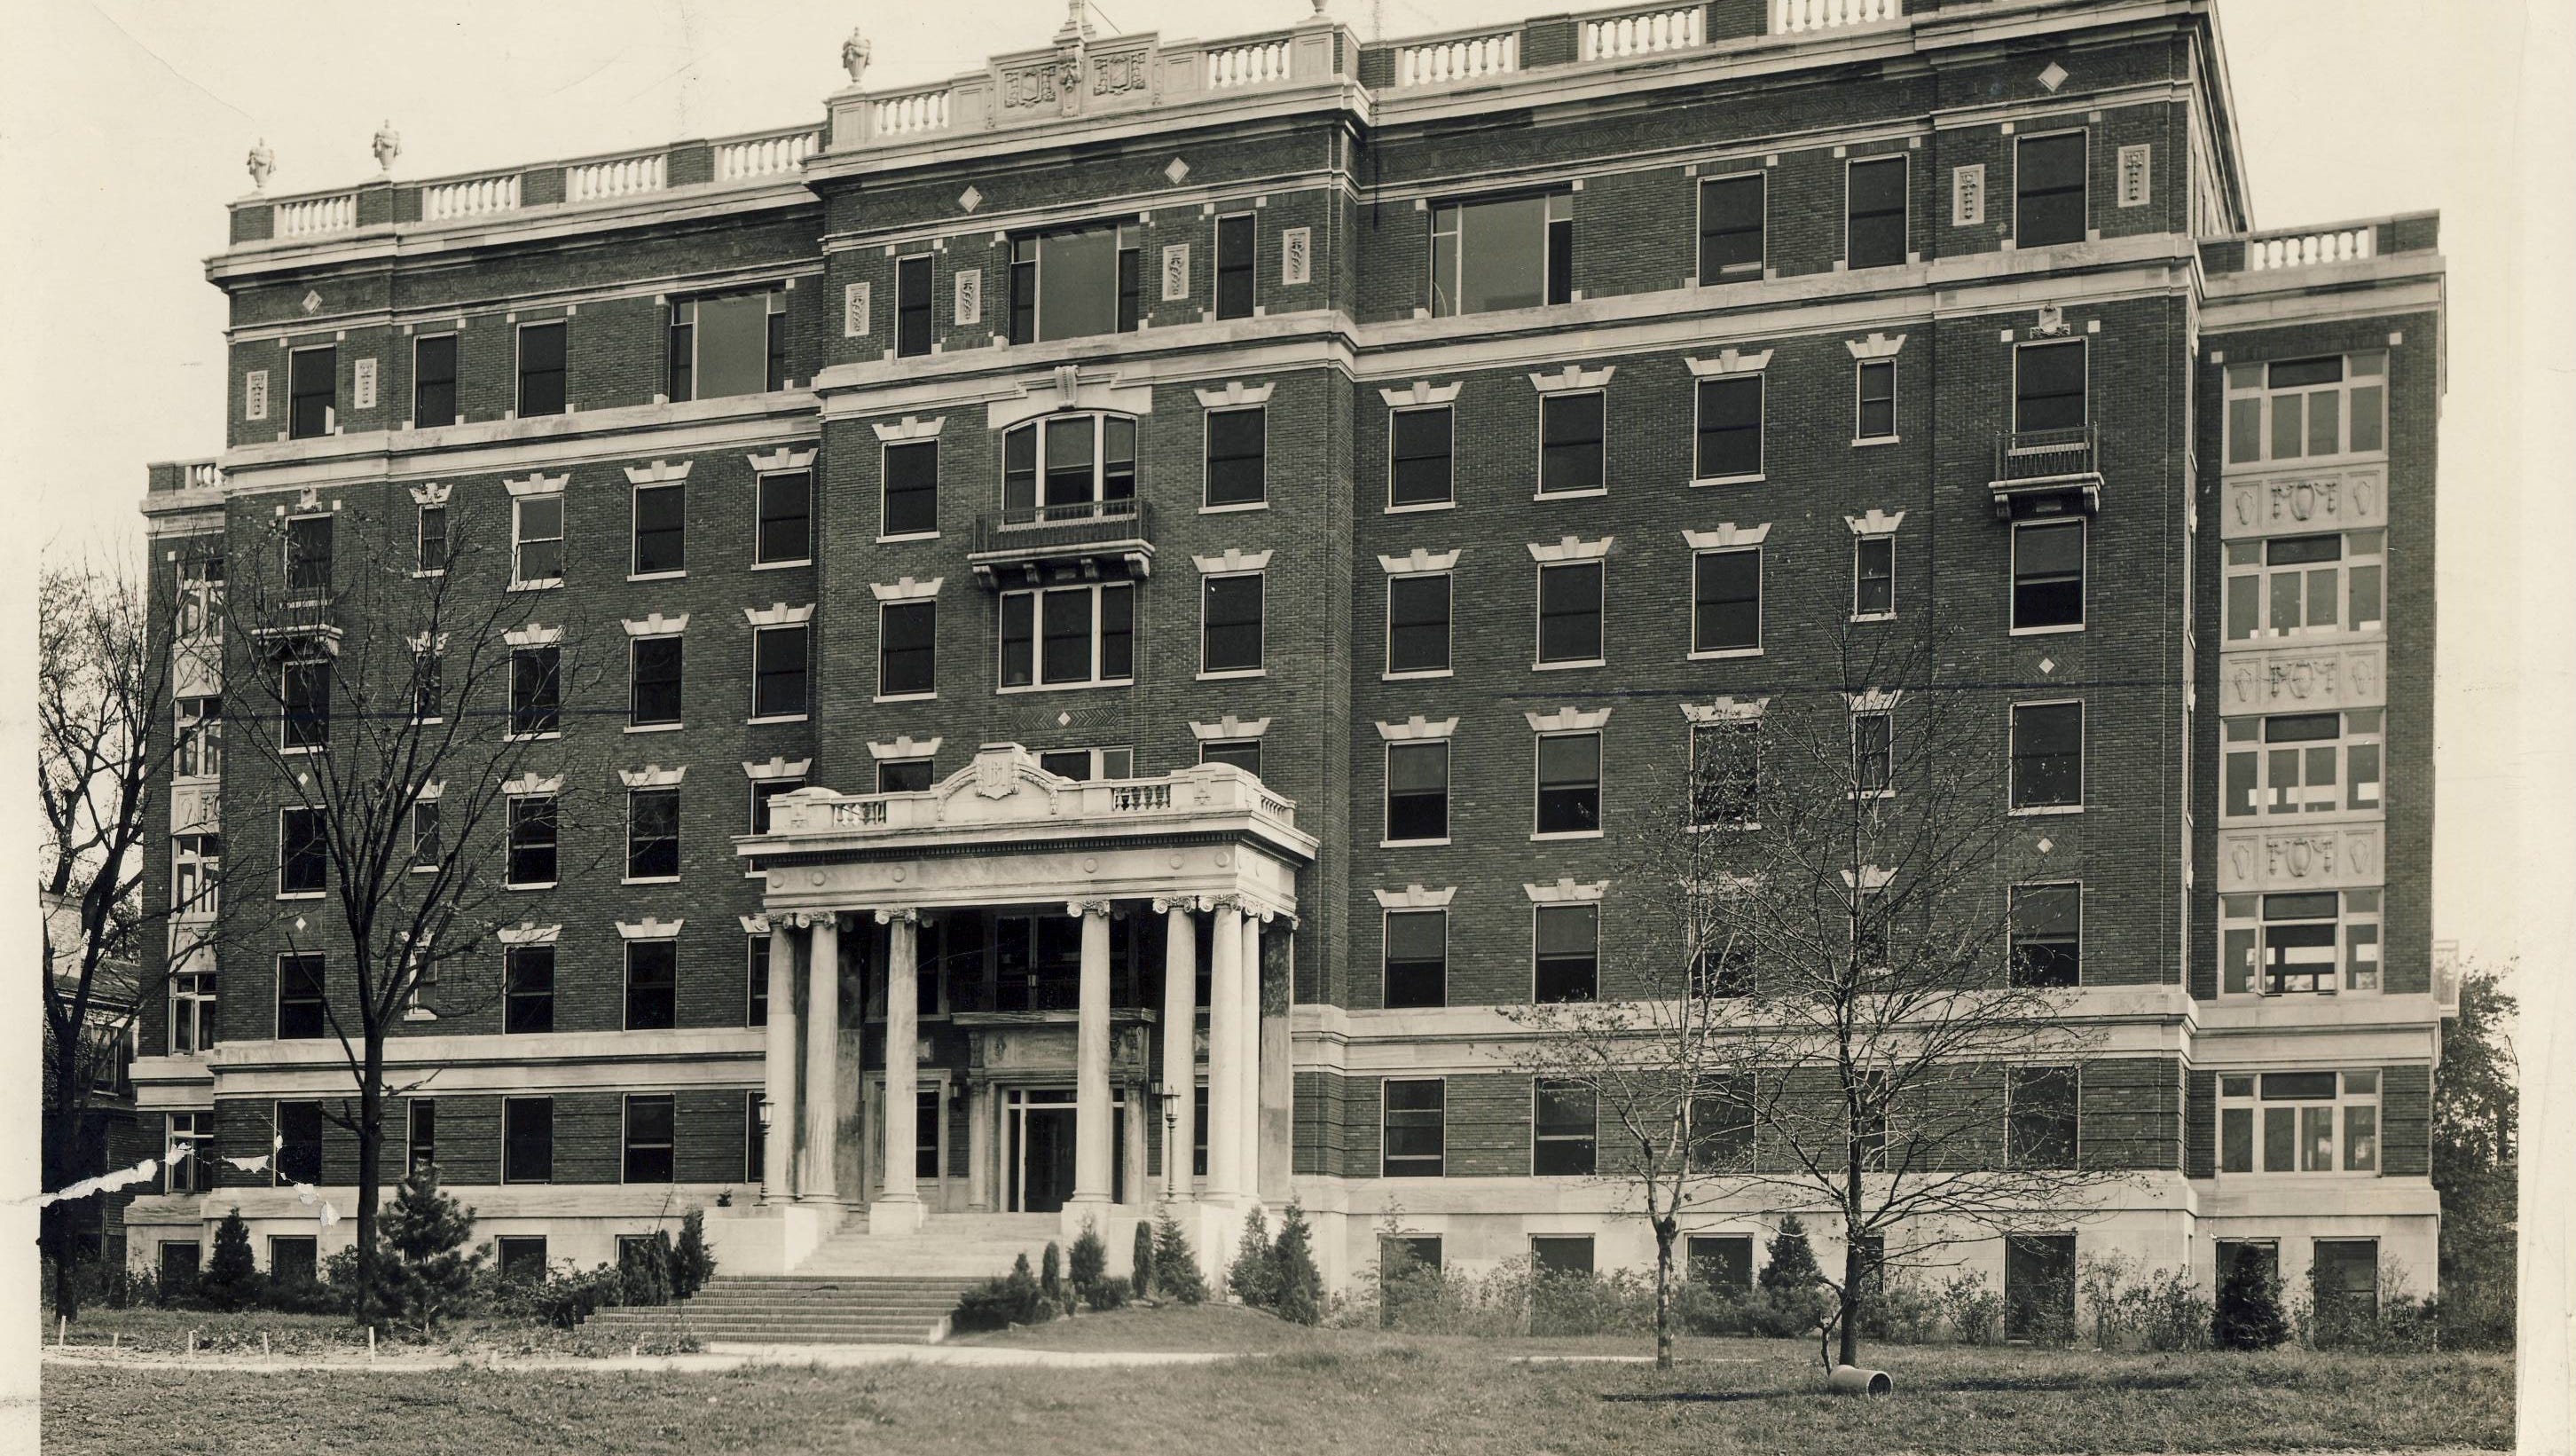 Retro 1924 Hospital Becomes Government Site